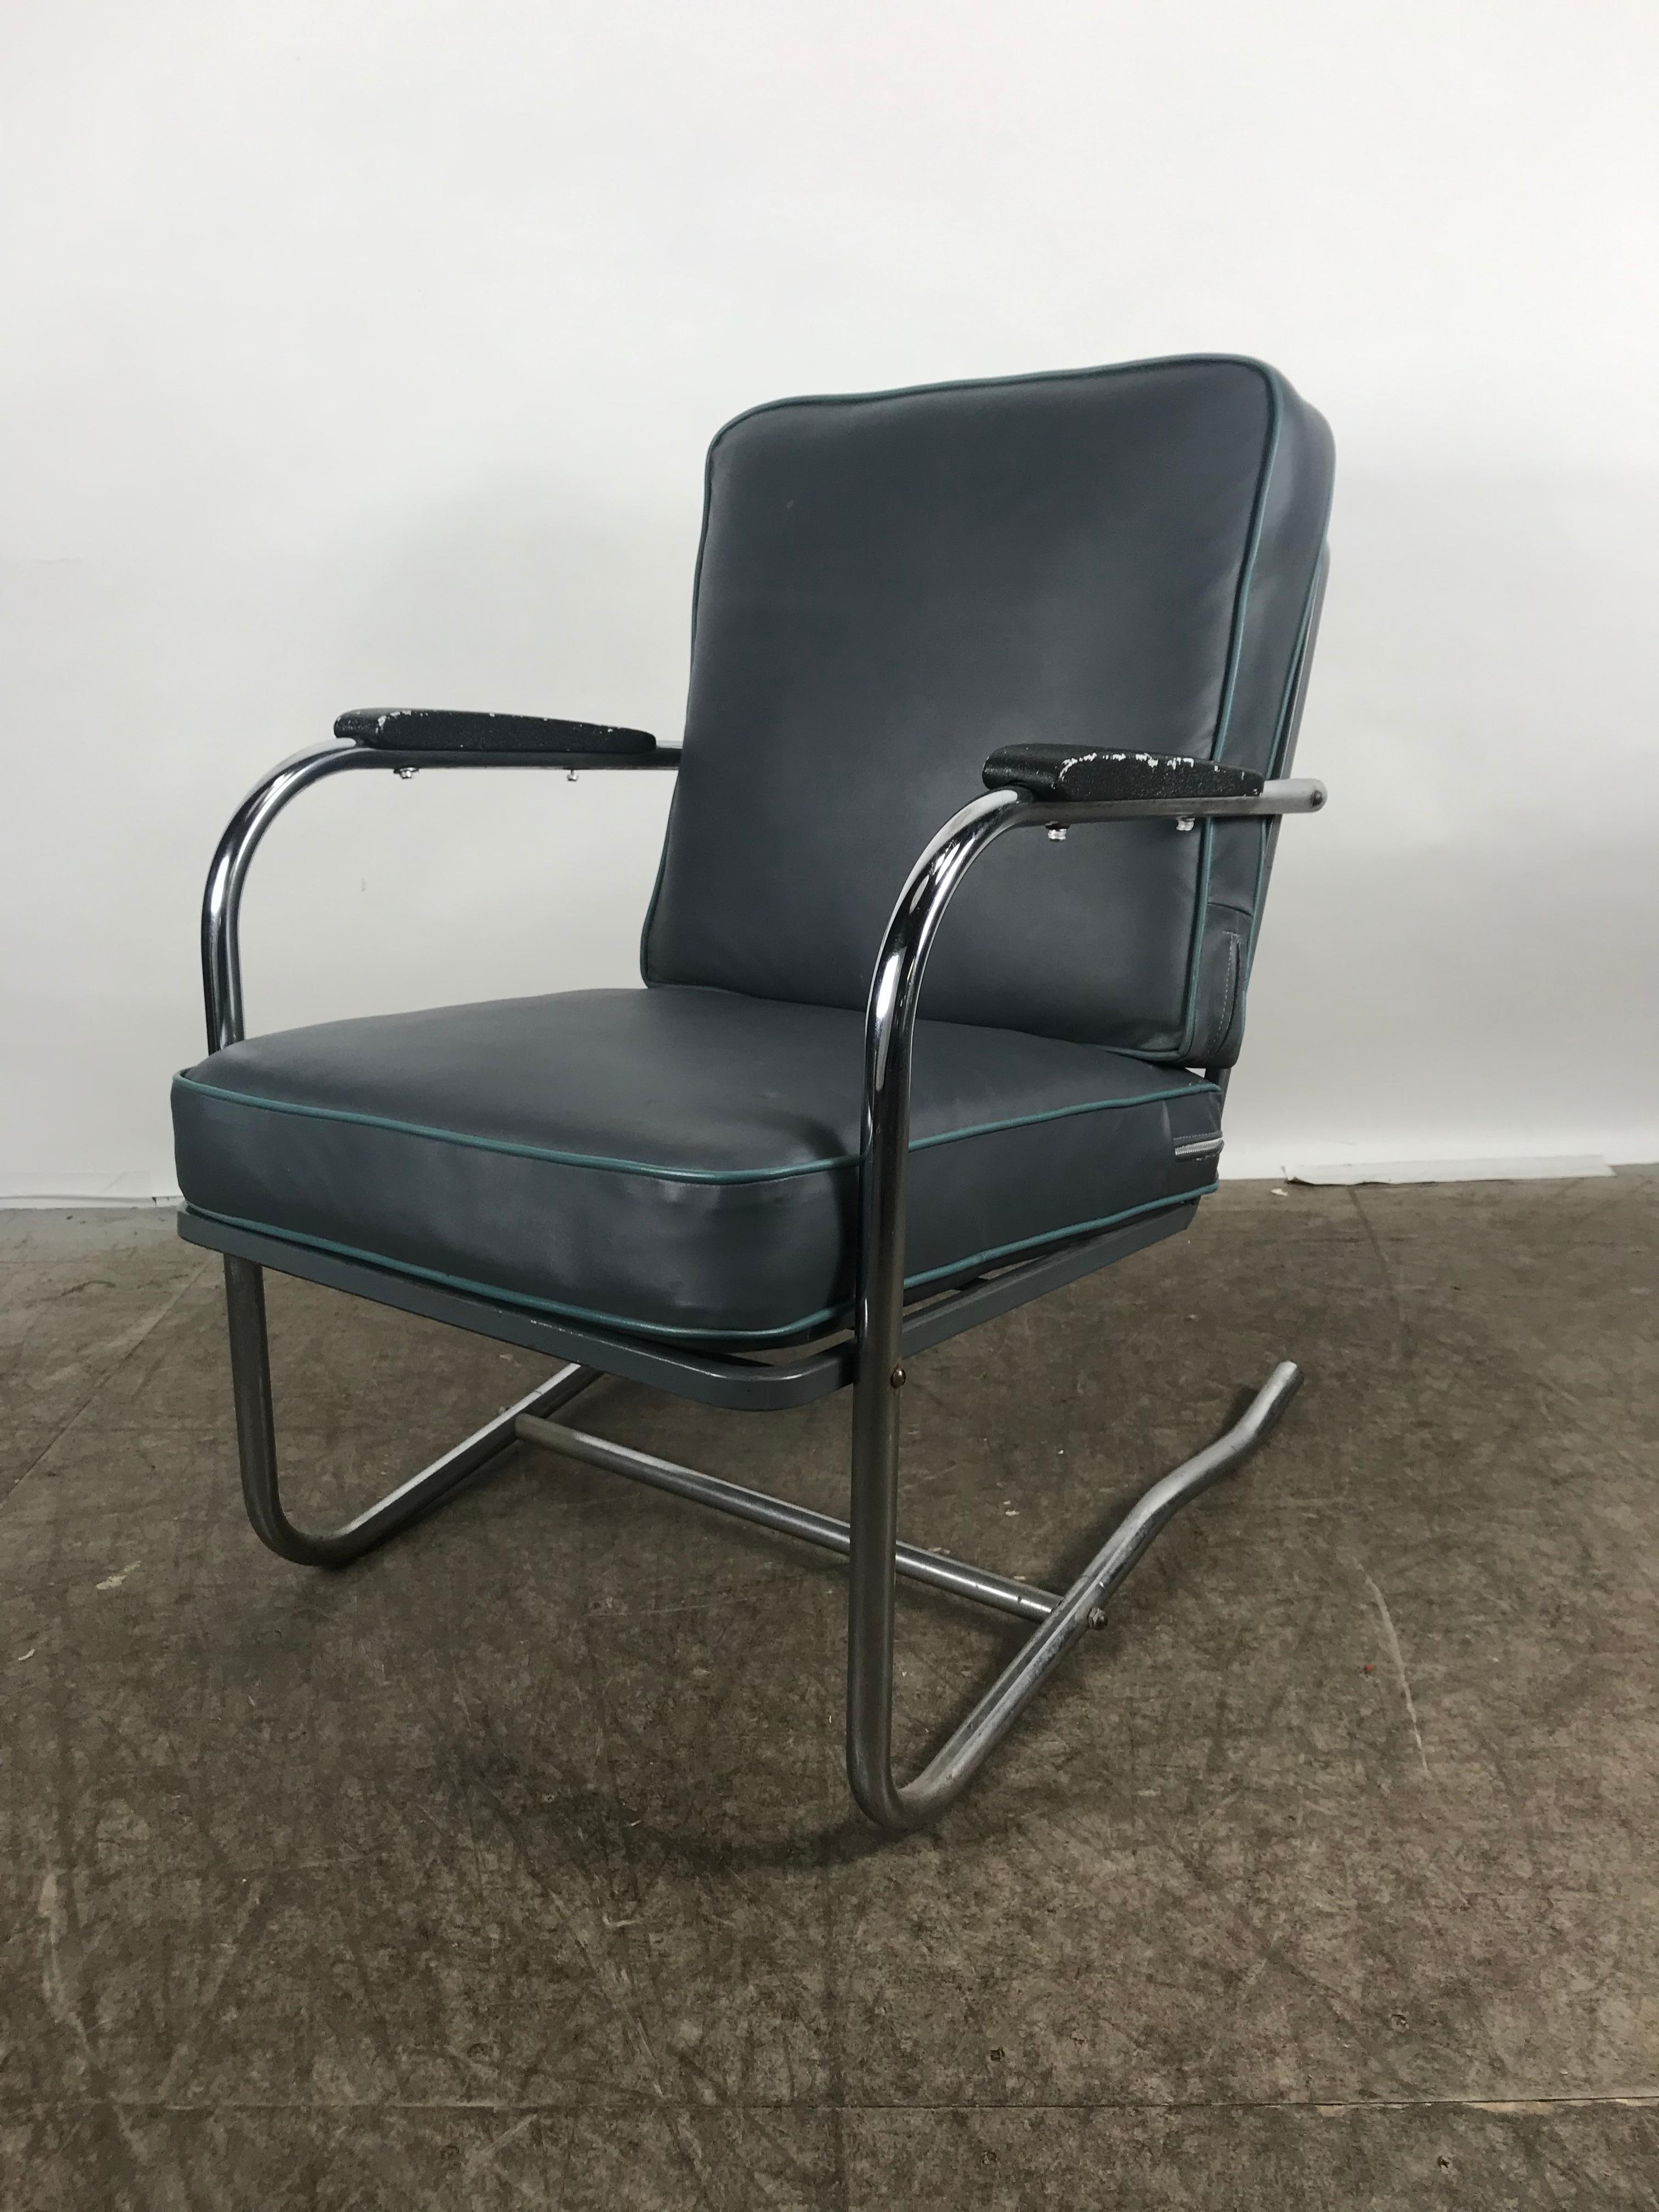 Klassischer Art Deco, Bauhaus-Sessel aus Chromrohr. Freischwinger mit verchromtem Gestell, kürzlich mit blauem Naugahyde-Stoff mit babyblauer Paspelierung bezogen, äußerst bequem.